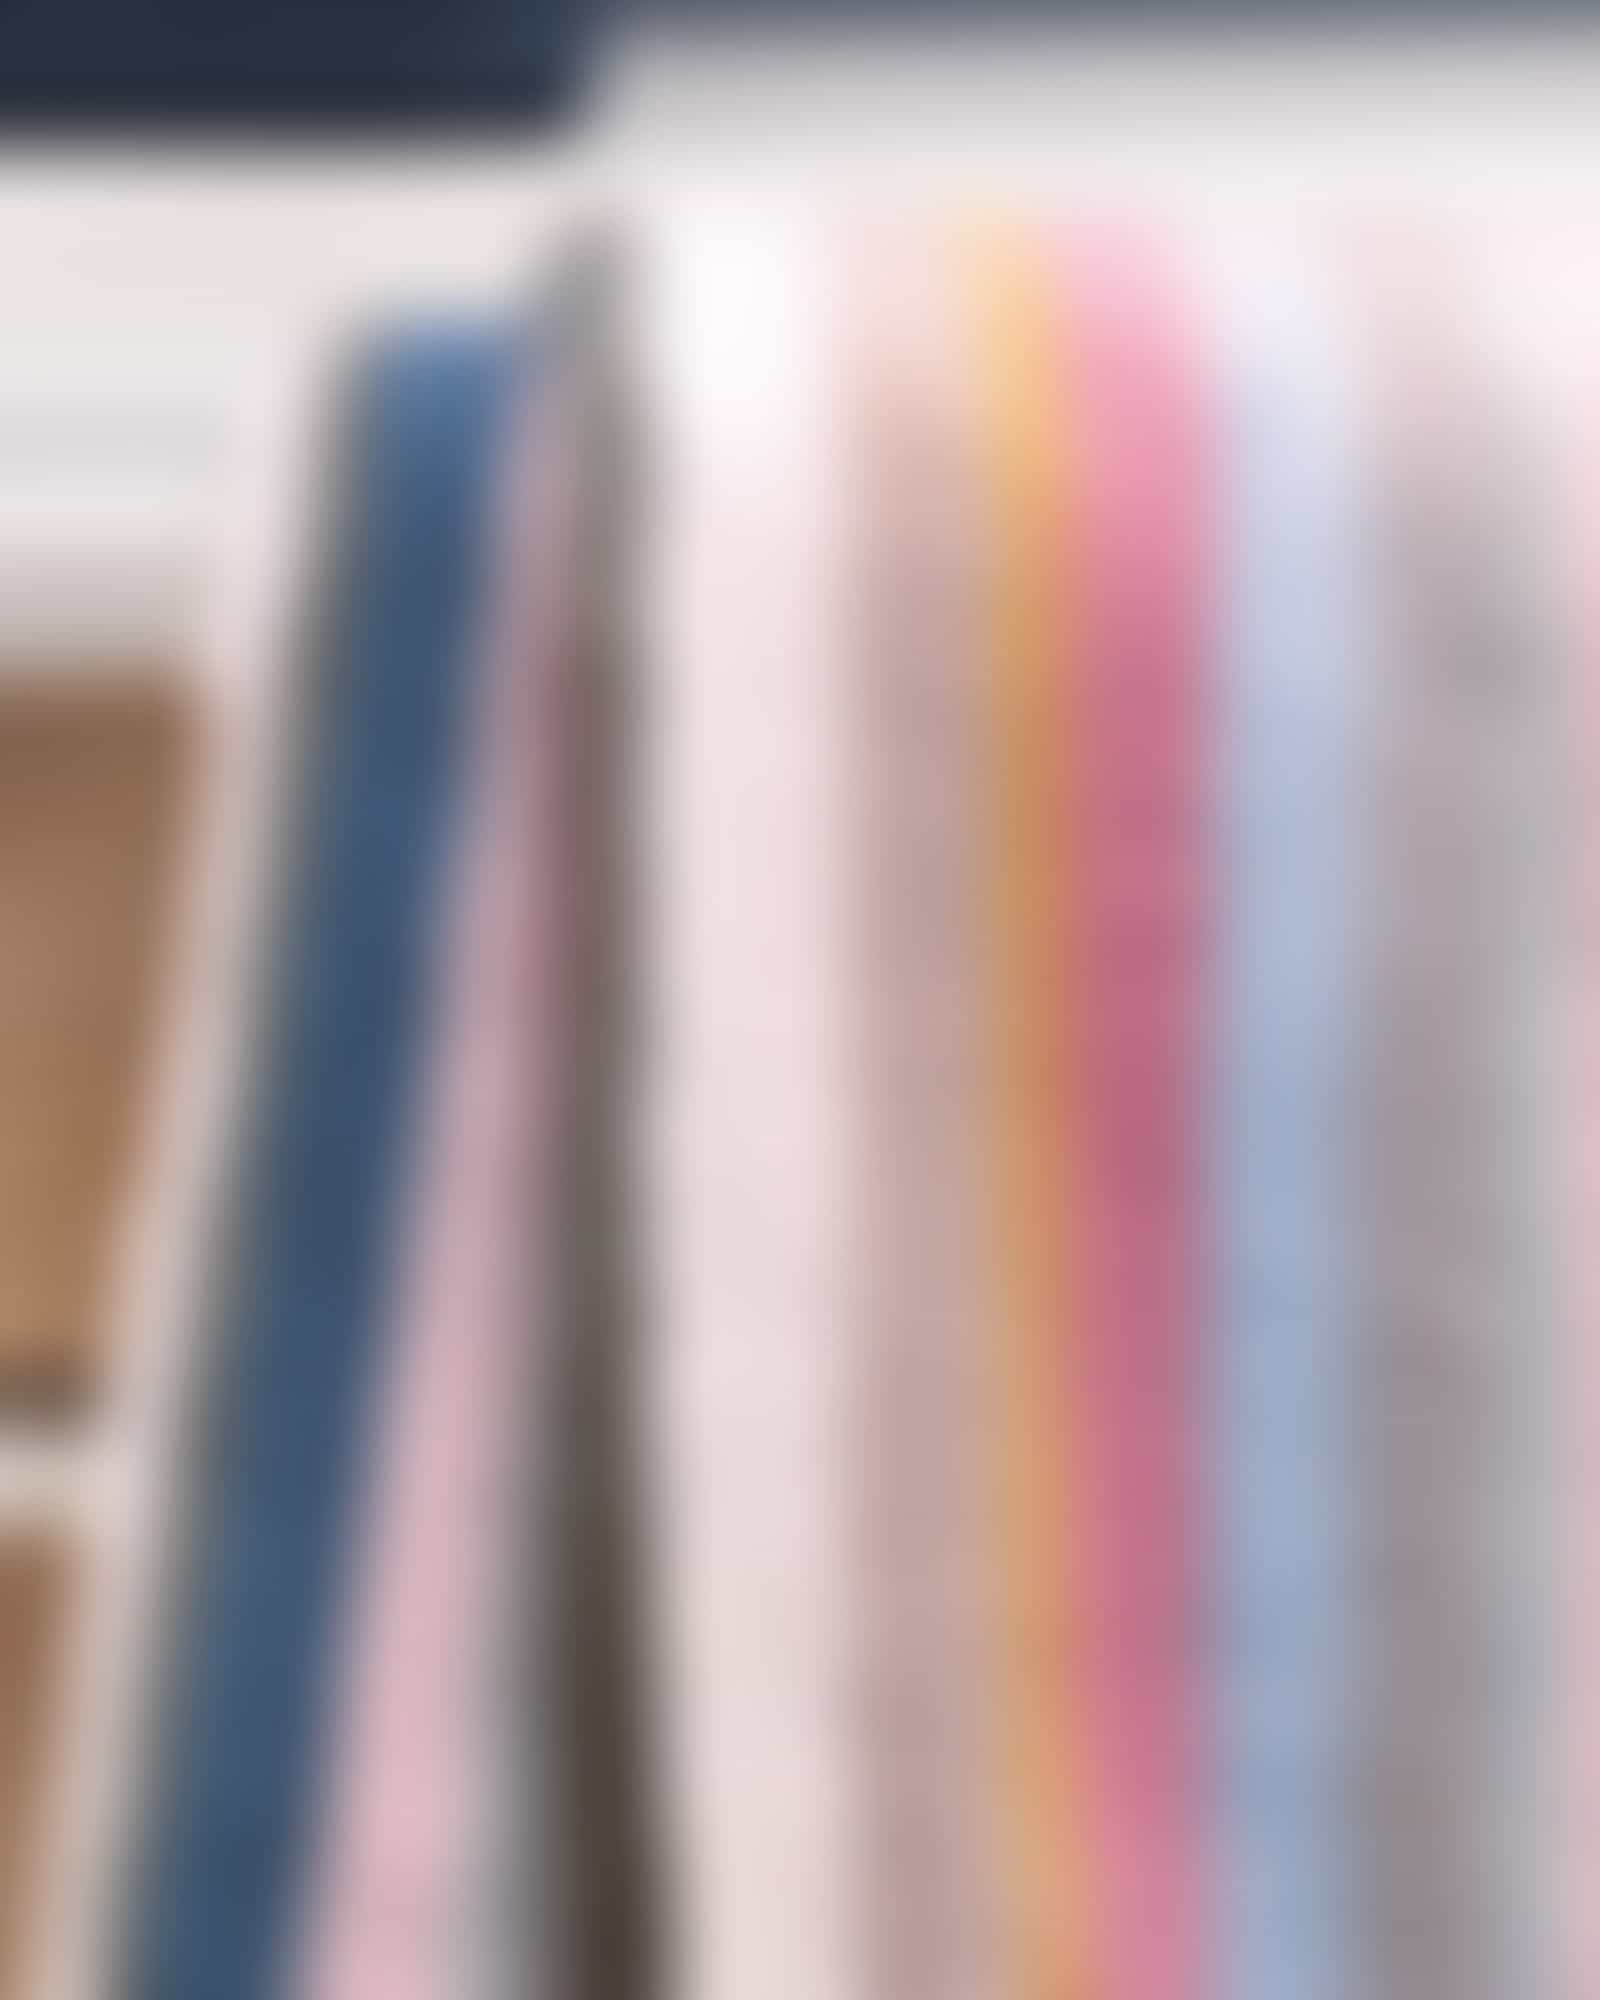 Villeroy & Boch Handtücher Coordinates Stripes 2551 - Farbe: multicolor - 12 - Duschtuch 80x150 cm Detailbild 2